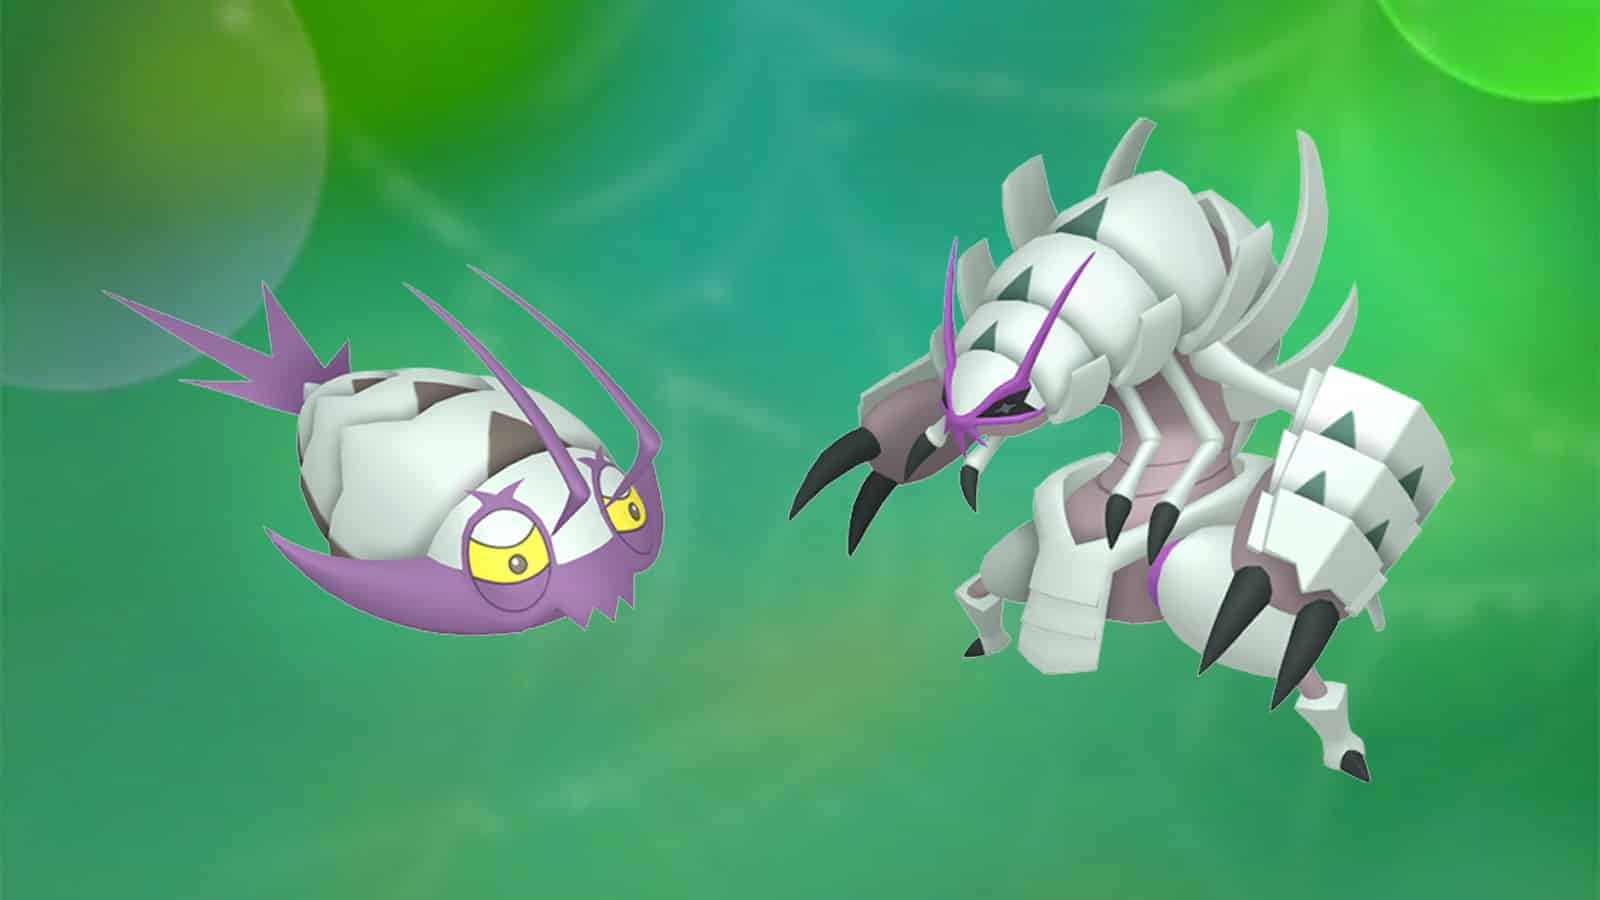 Wimpod and evolution Golisopod in Pokemon GO